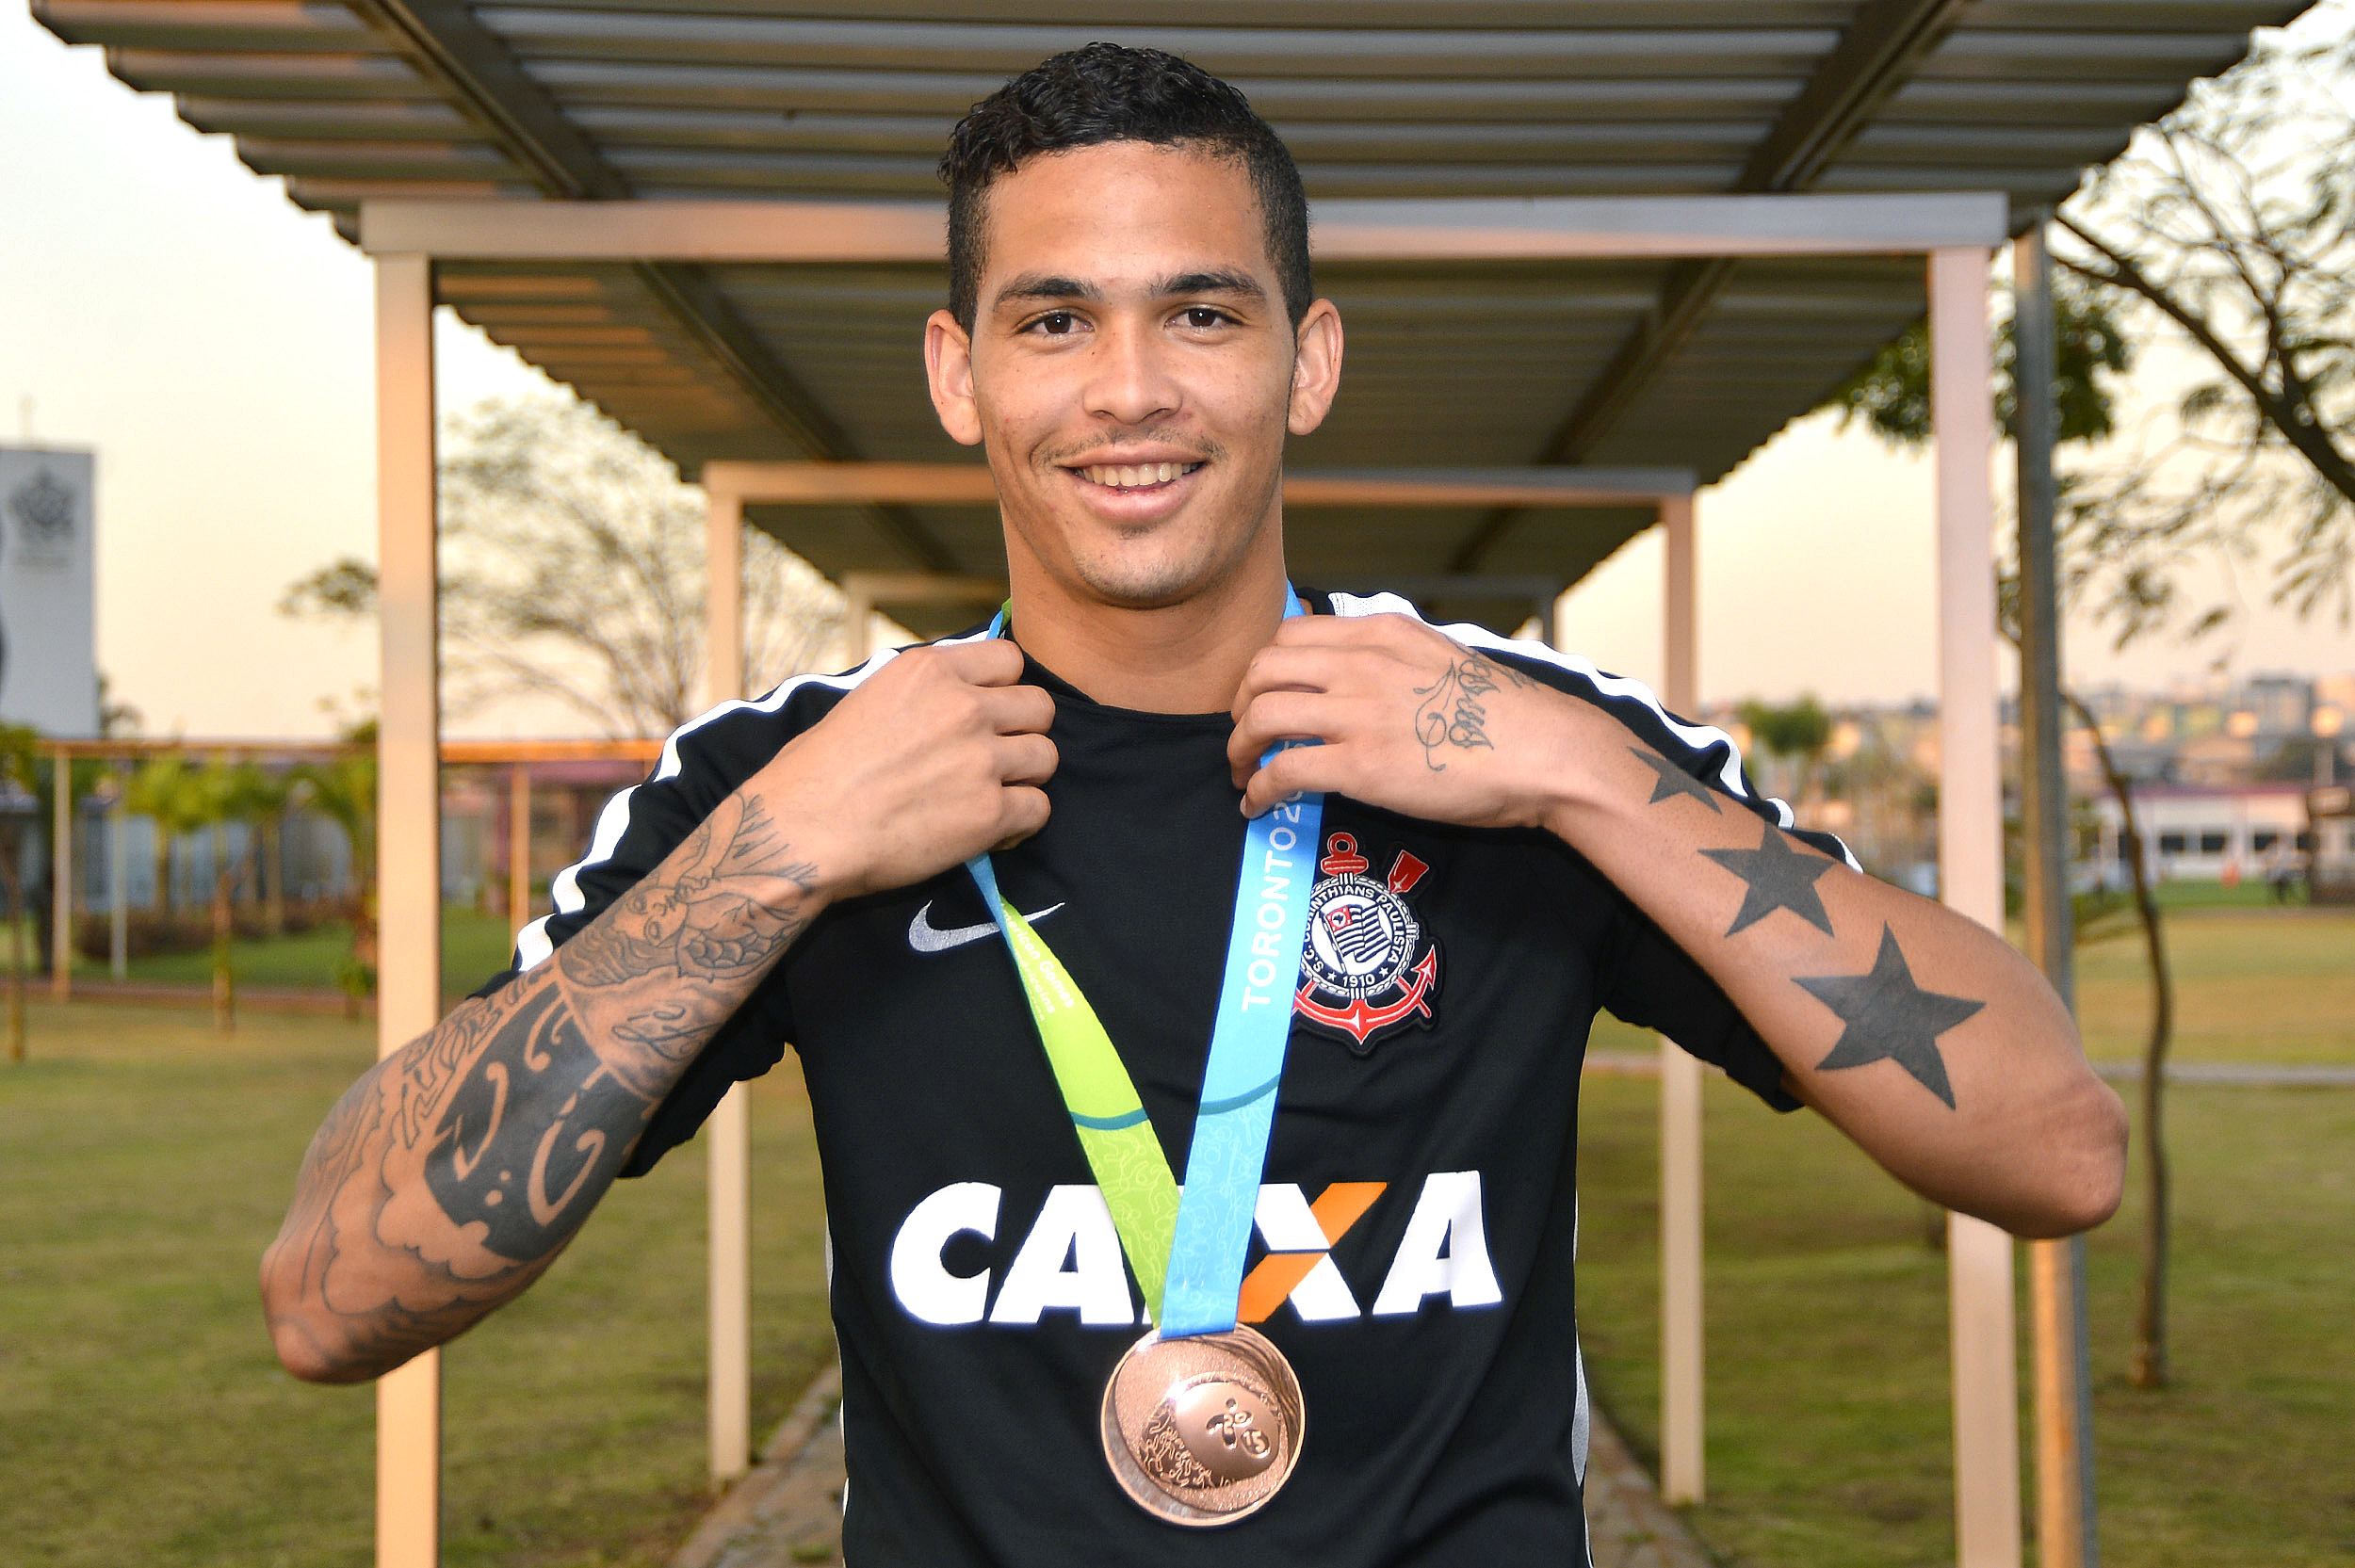 Corinthians no Pan-Americano: confira o saldo dos atletas do Timão